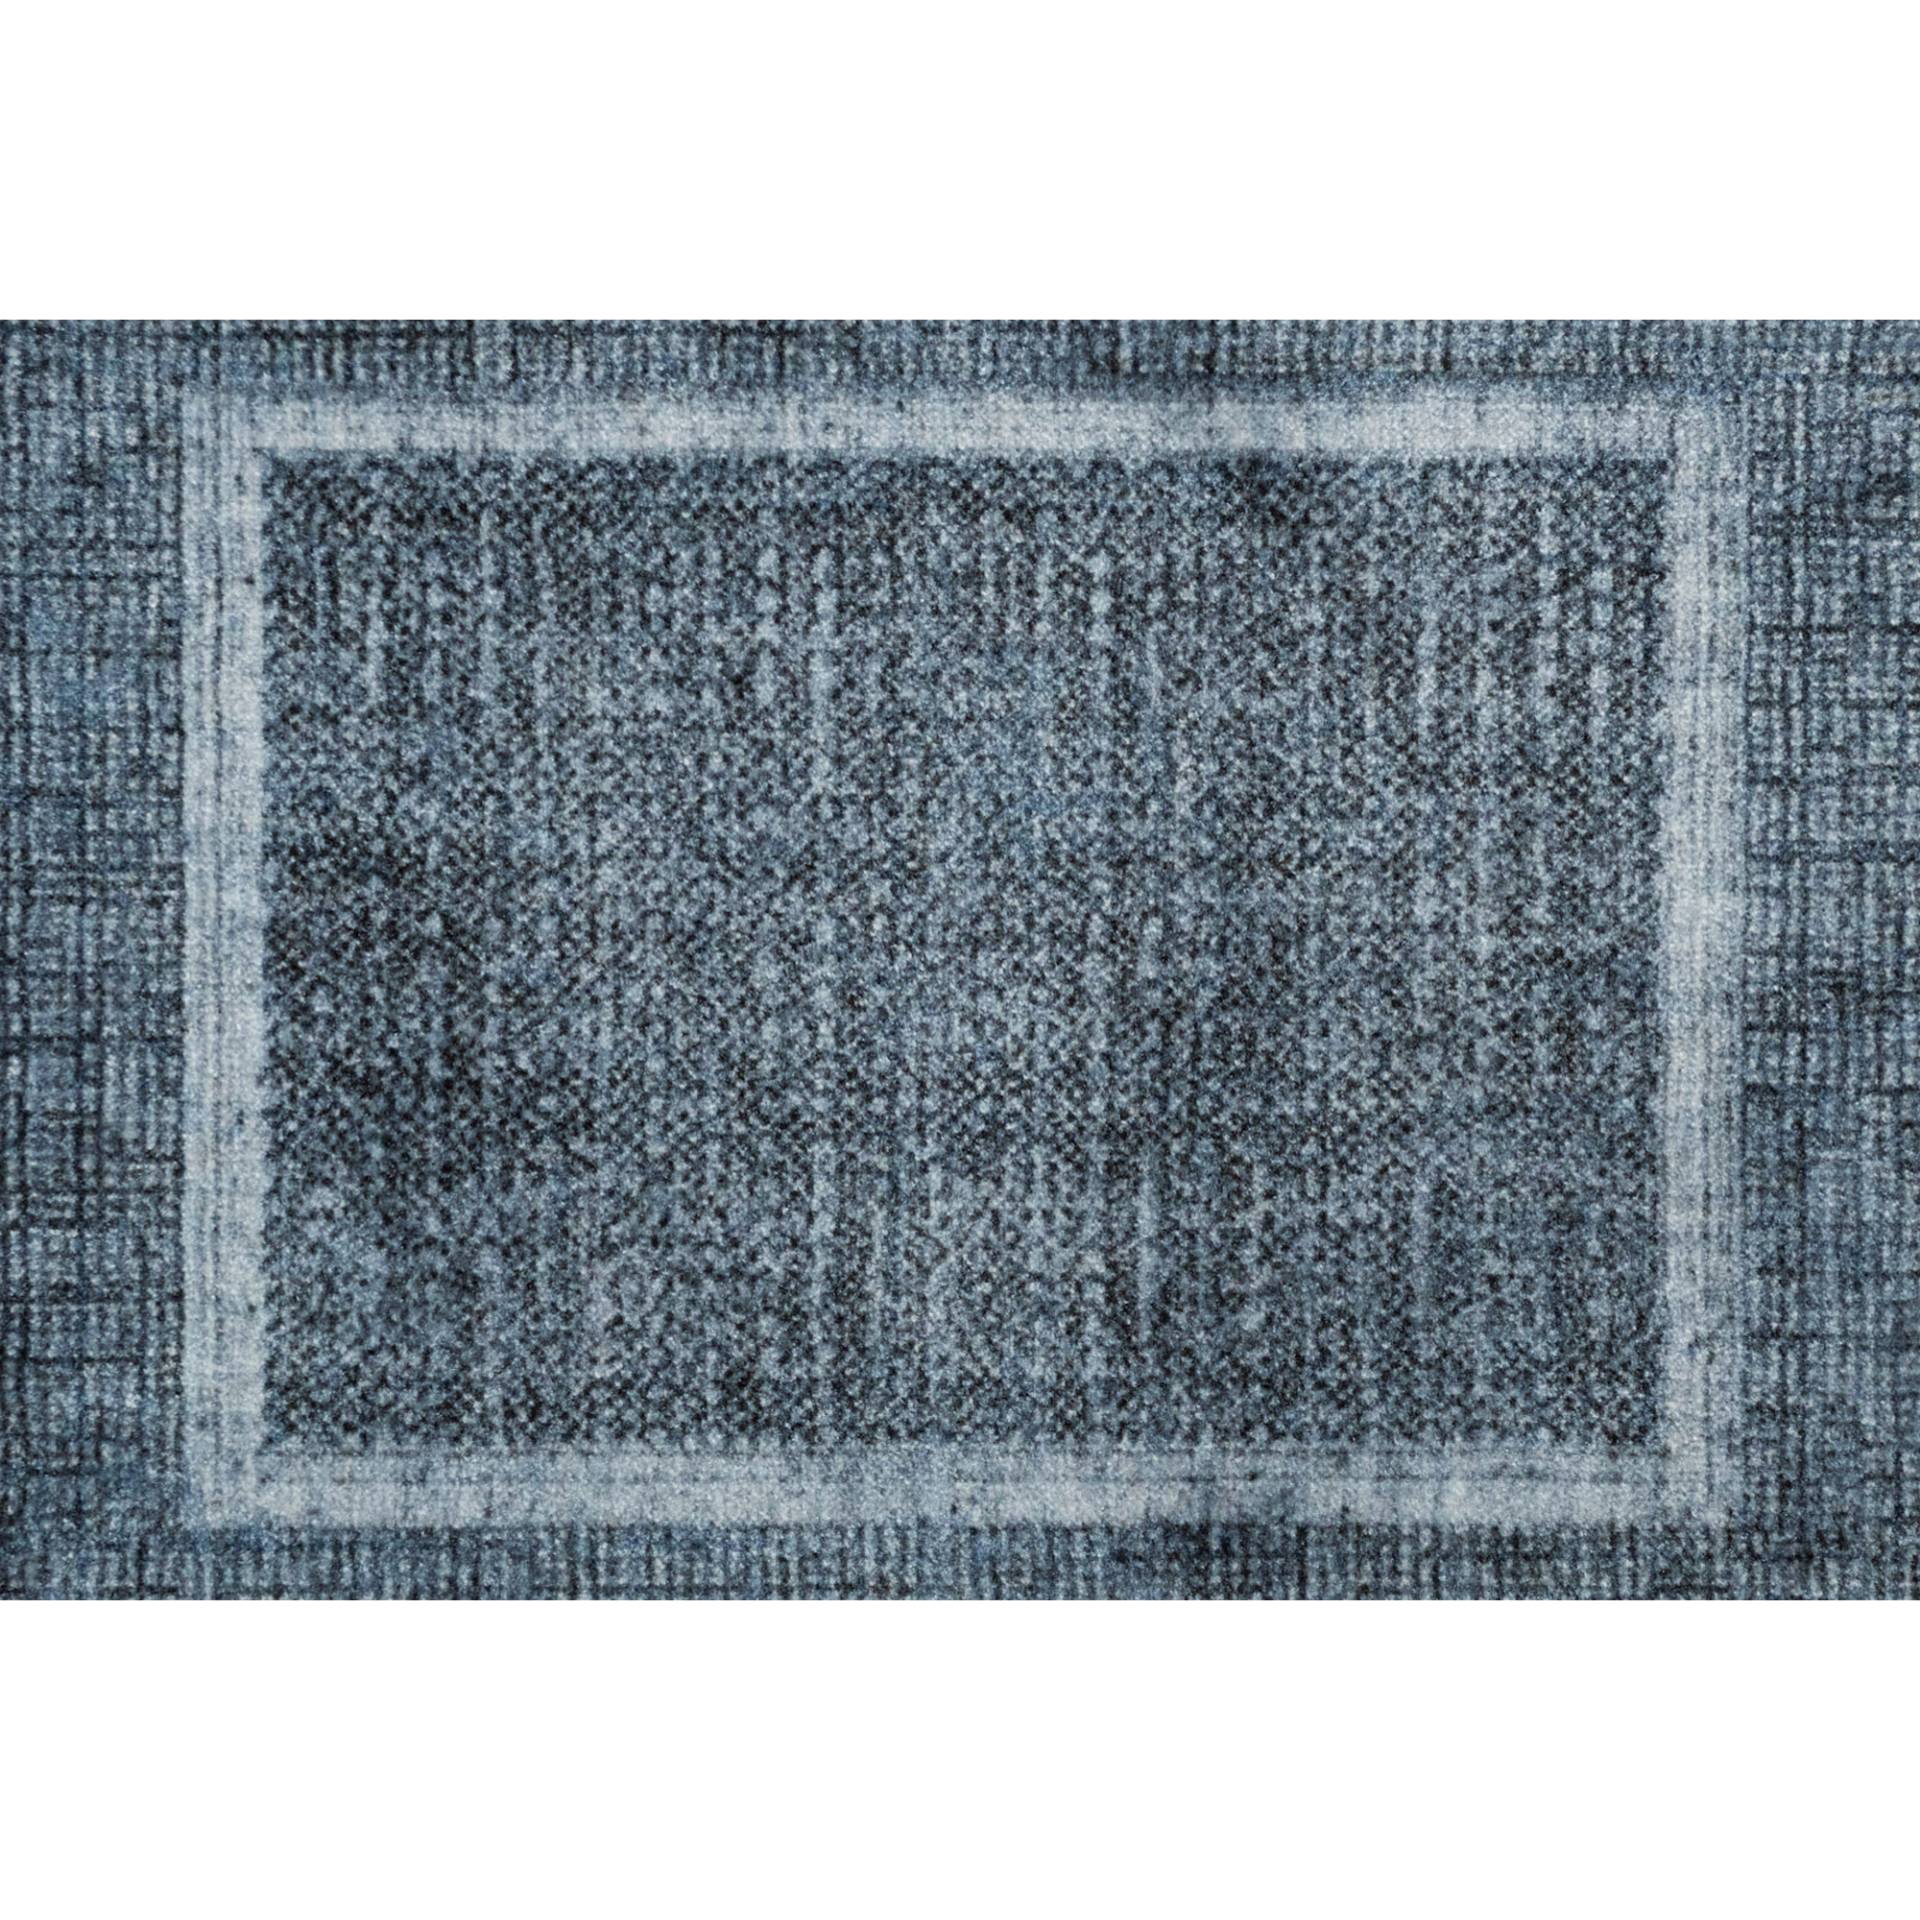 Barbara Becker Fußmatte 'BB Square' trueblue 39 x 58 cm von barbara becker